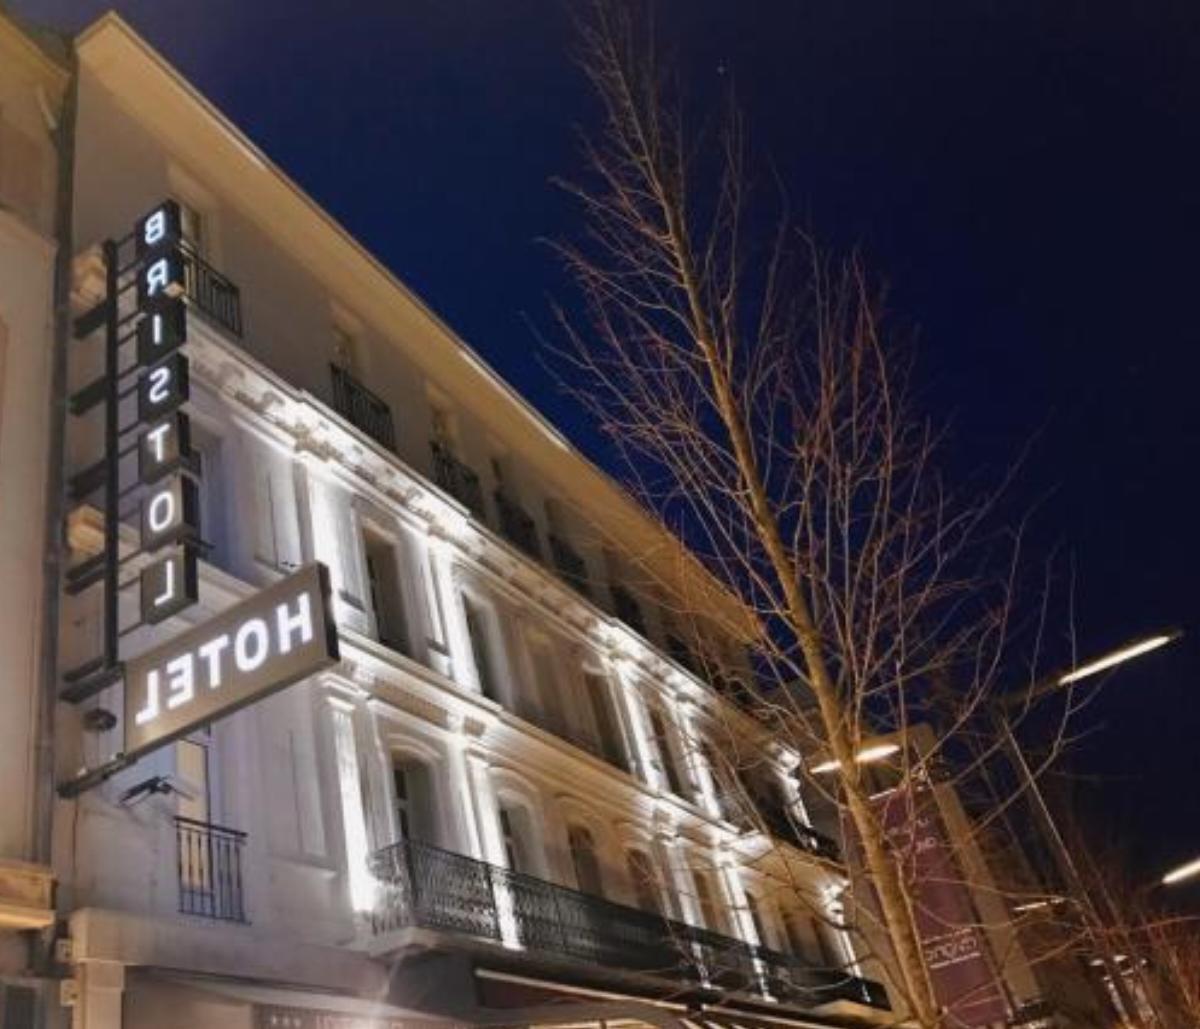 Hôtel Bristol Hotel Avignon France